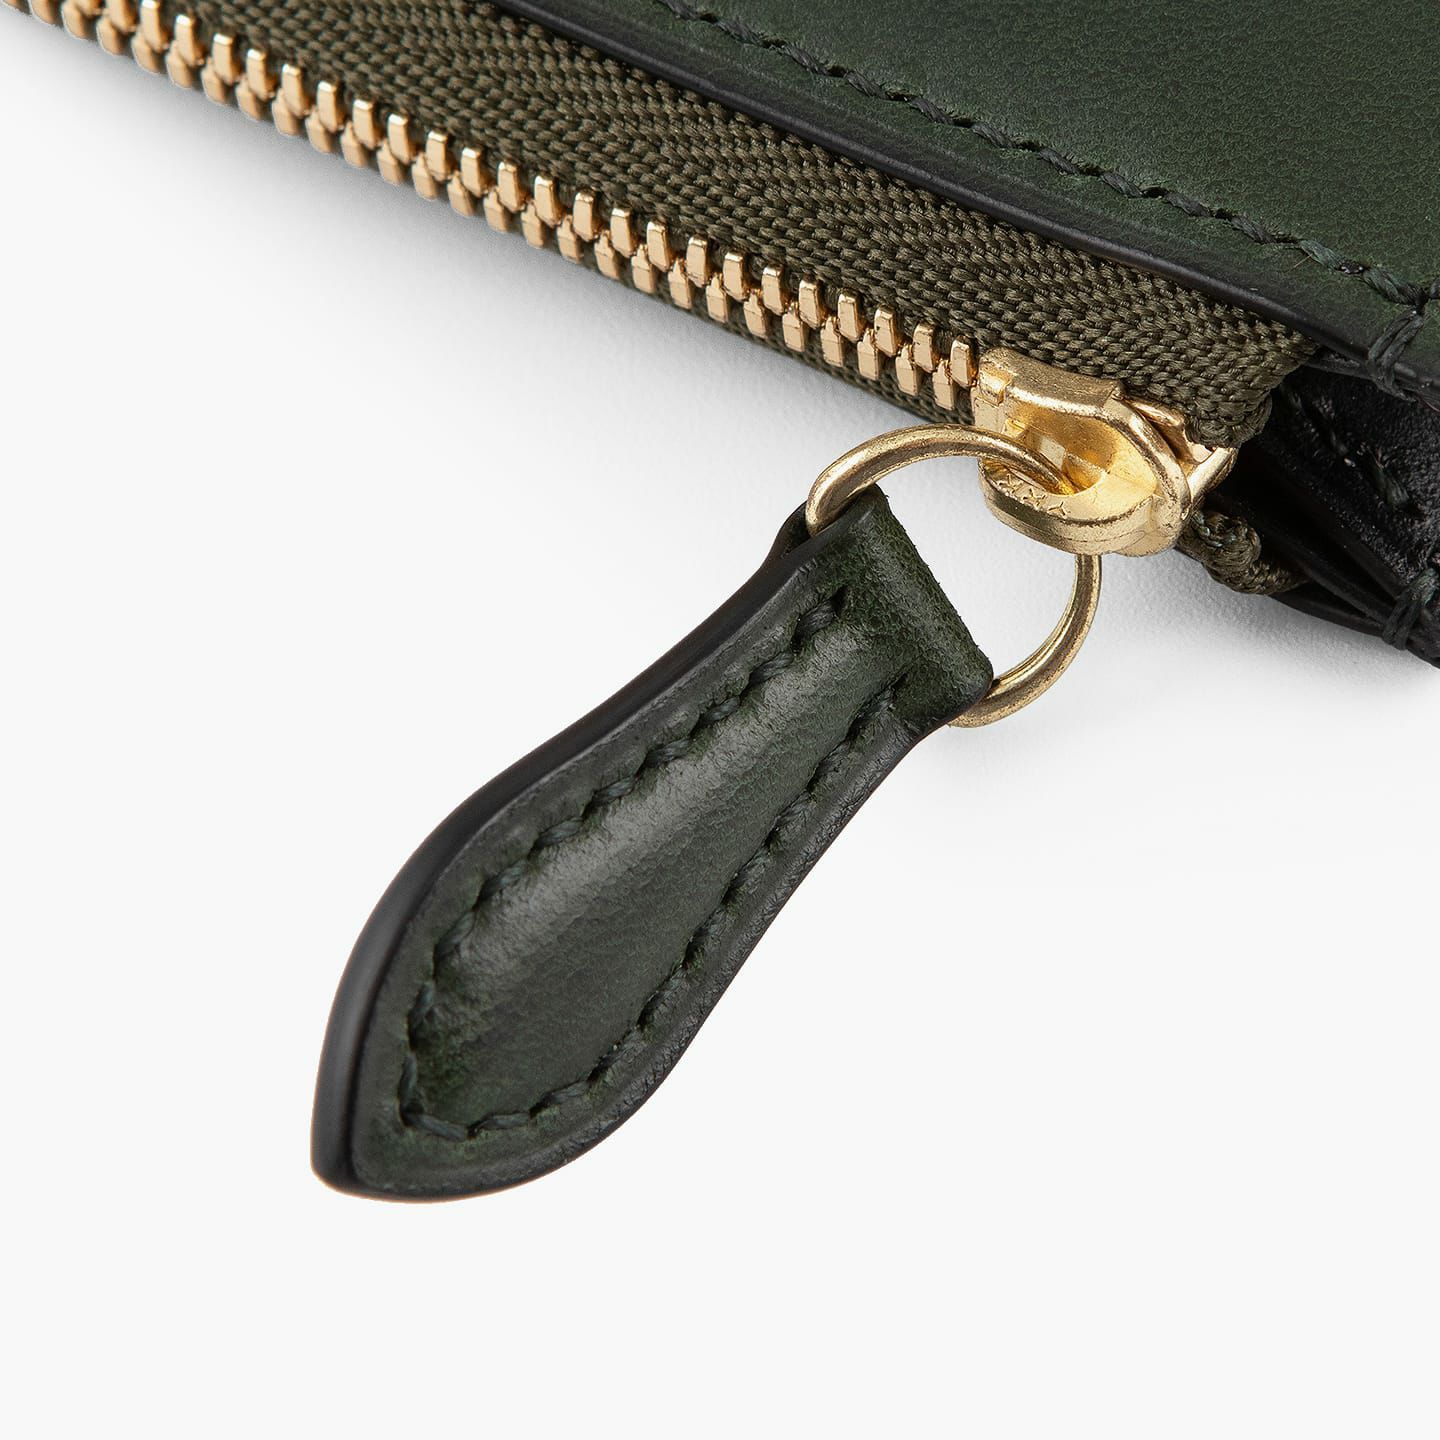 外装＆内装コインポケット（イングラサット）：Green、内装（イングラサット）：Black、糸色：外装＆内装コインポケットと同系色、ファスナー：Gold